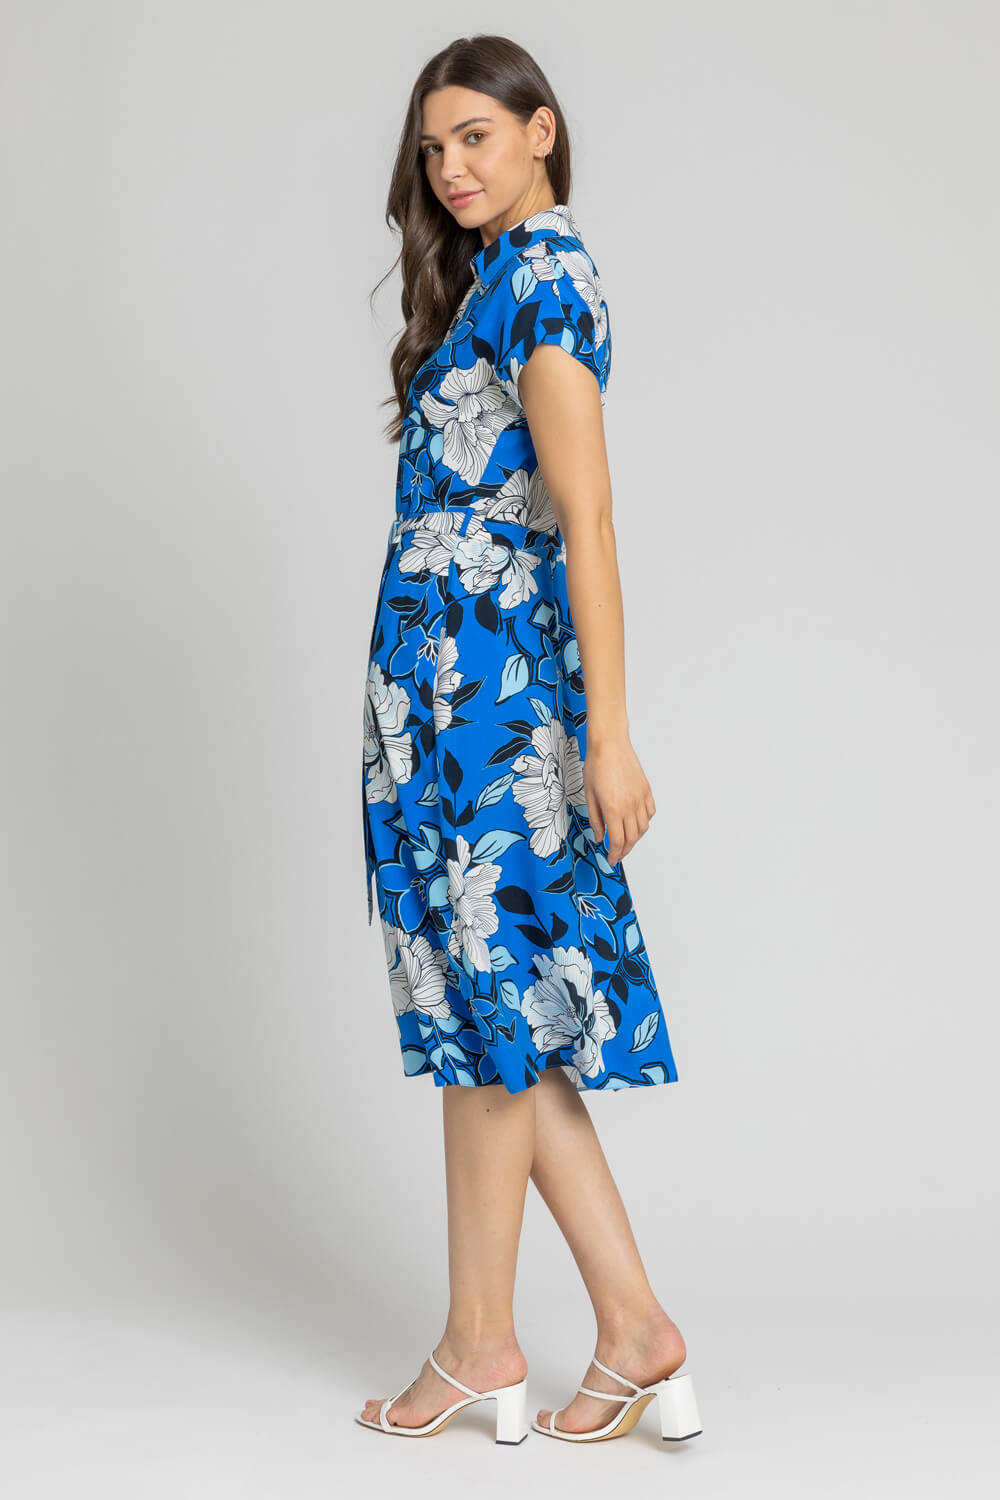 Blue Floral Print Belted Shirt Dress, Image 2 of 4